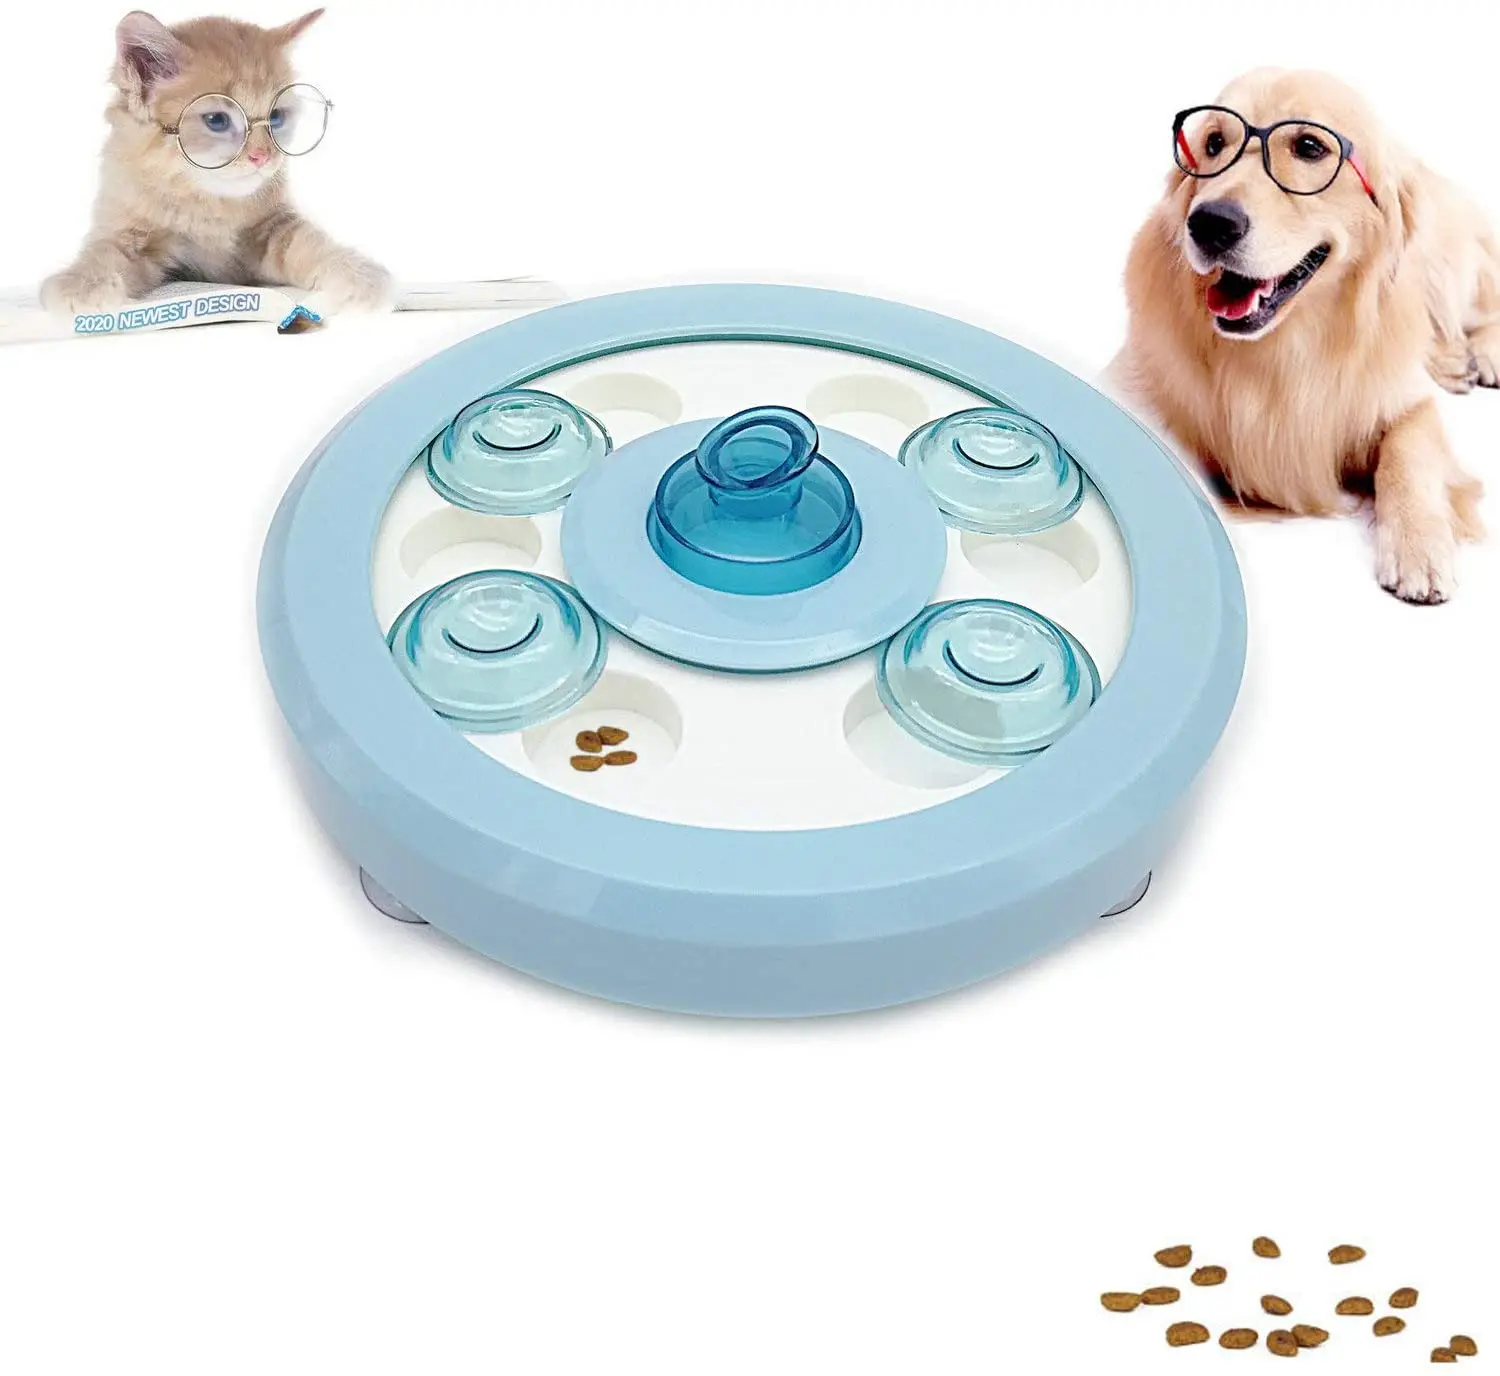 

Игрушка для собак, забавная игра-пазл для щенков, игрушка для начинающих, дозатор для собак, медленная кормушка, интерактивный пазл для соба...